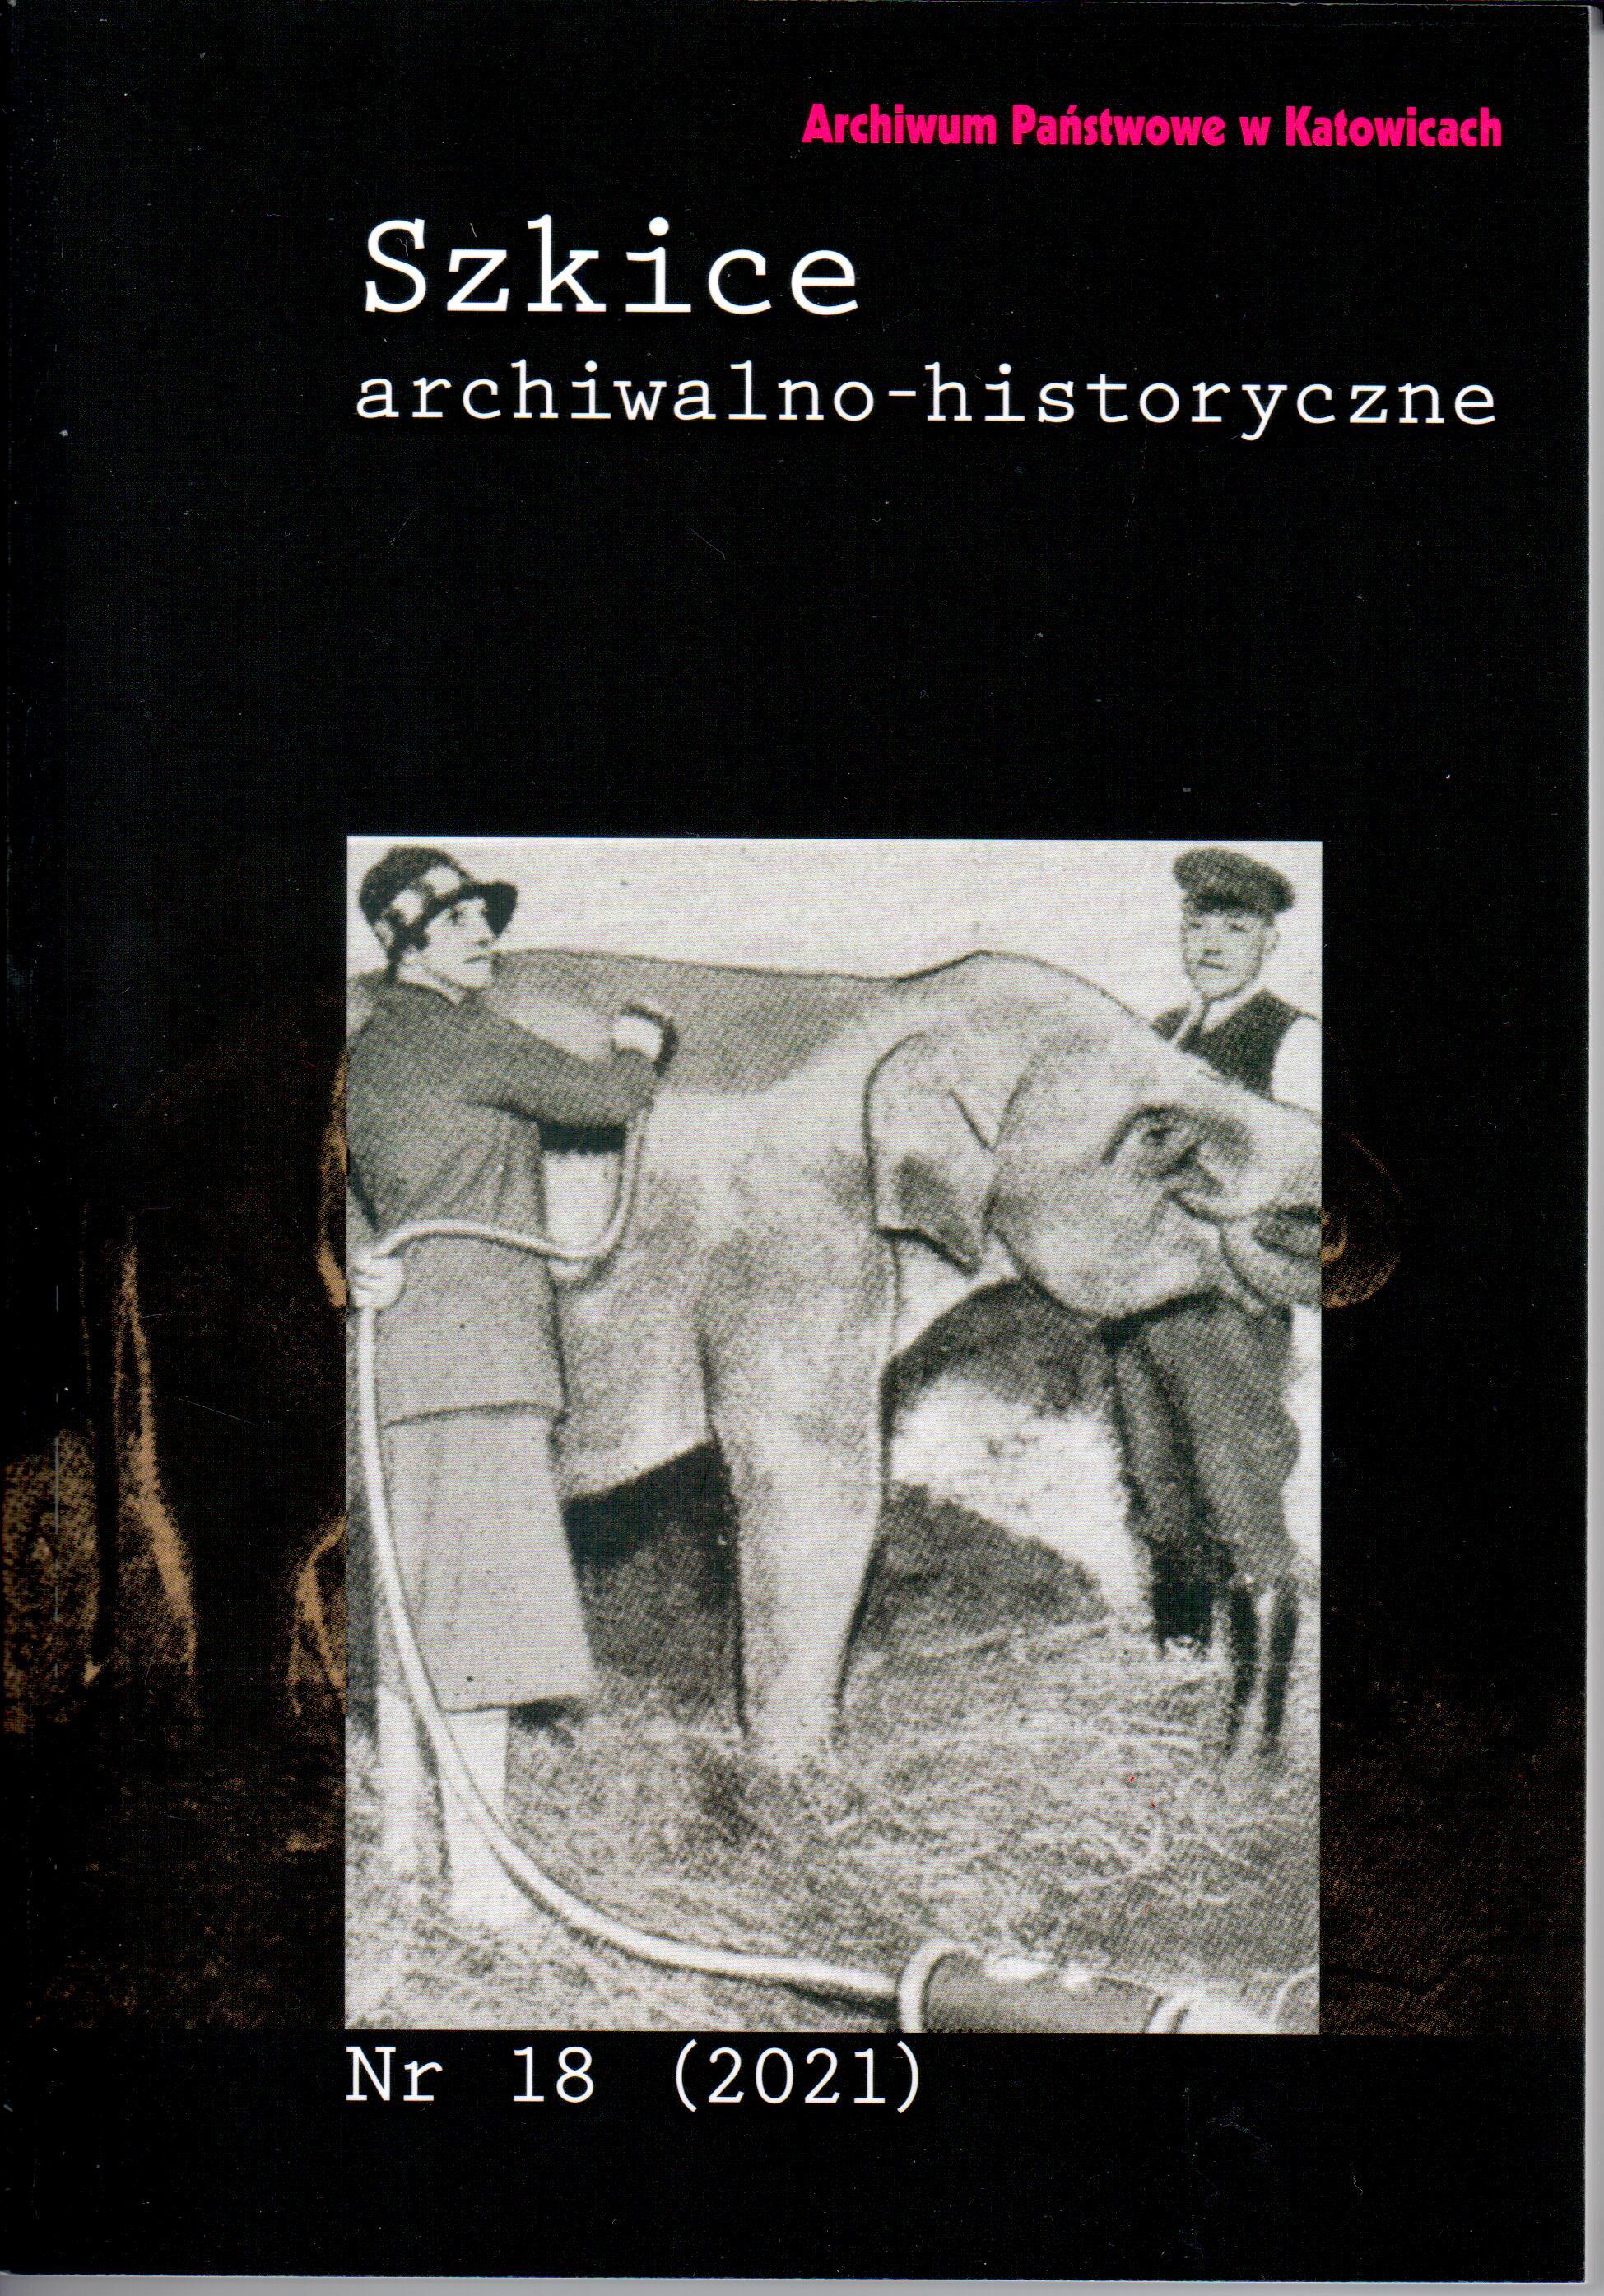 Okładka 18 numeru czasopisma „Szkice Archiwalno-Historyczne” z 2021, na okładce archiwalne zdjęcie kobiety, mężczyzny i słonia.